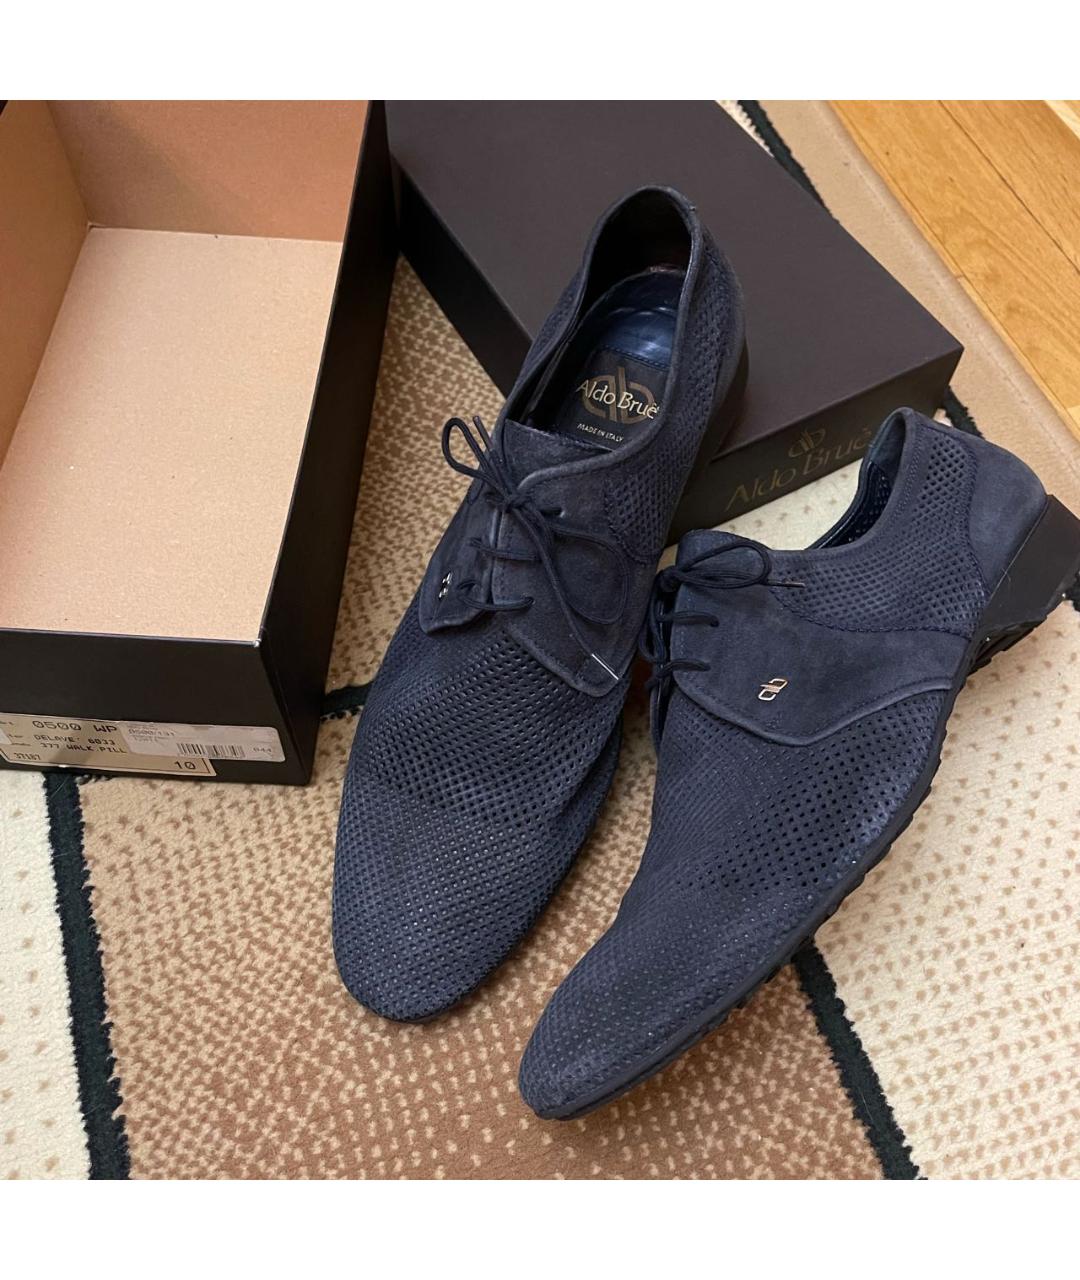 ALDO BRUE Темно-синие замшевые туфли, фото 2